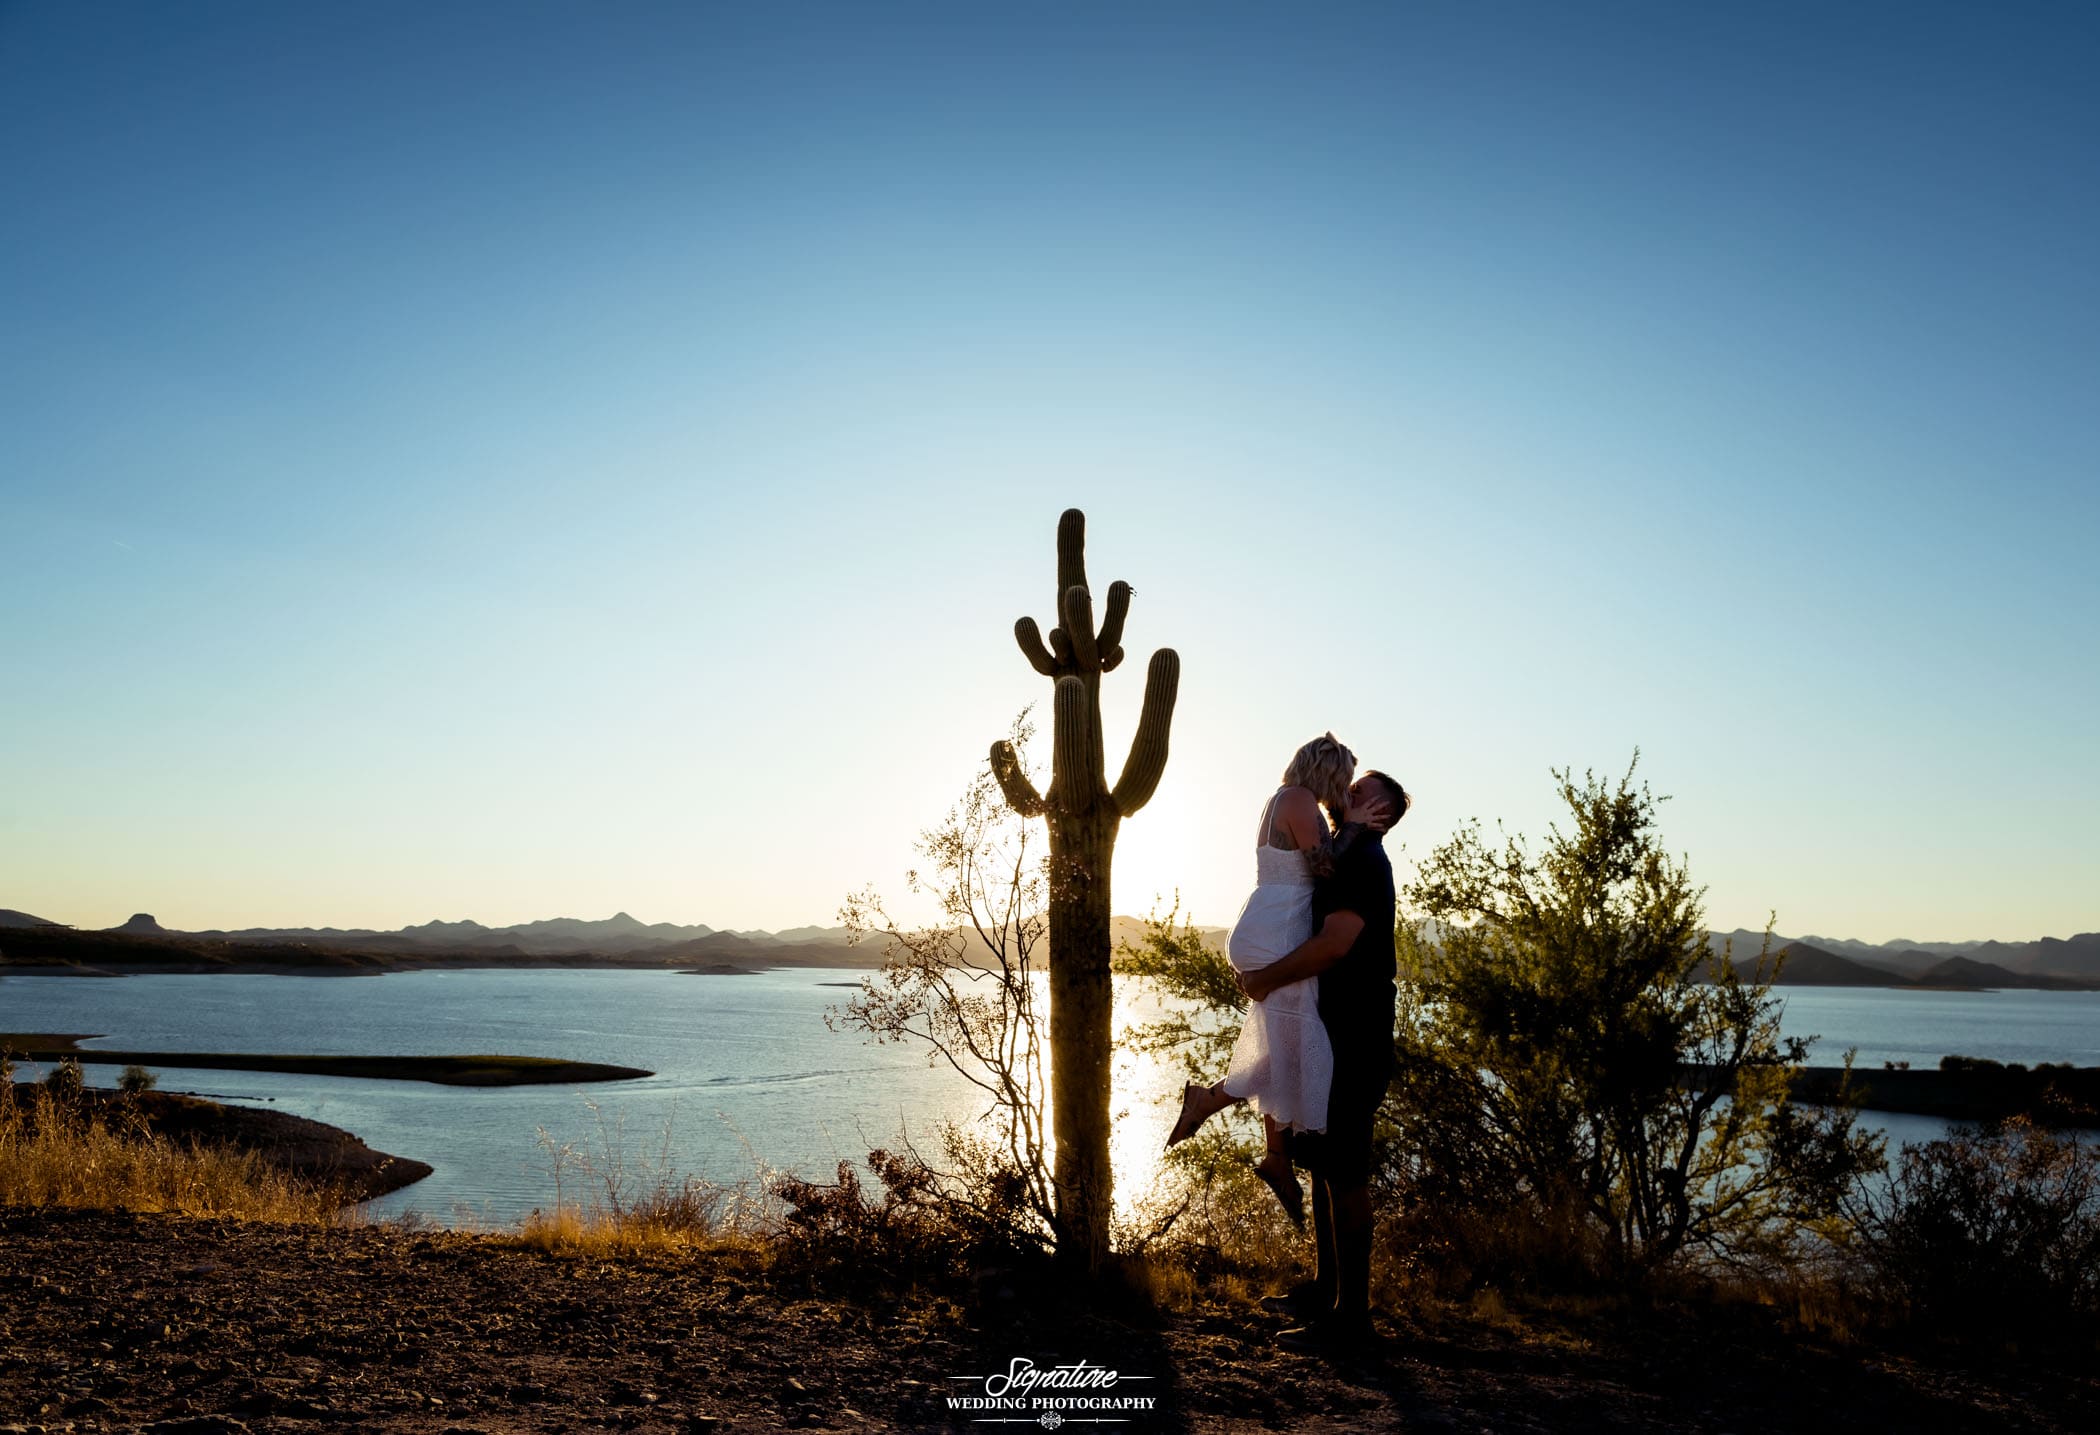 Man picking up woman kissing next to cactus at sunset